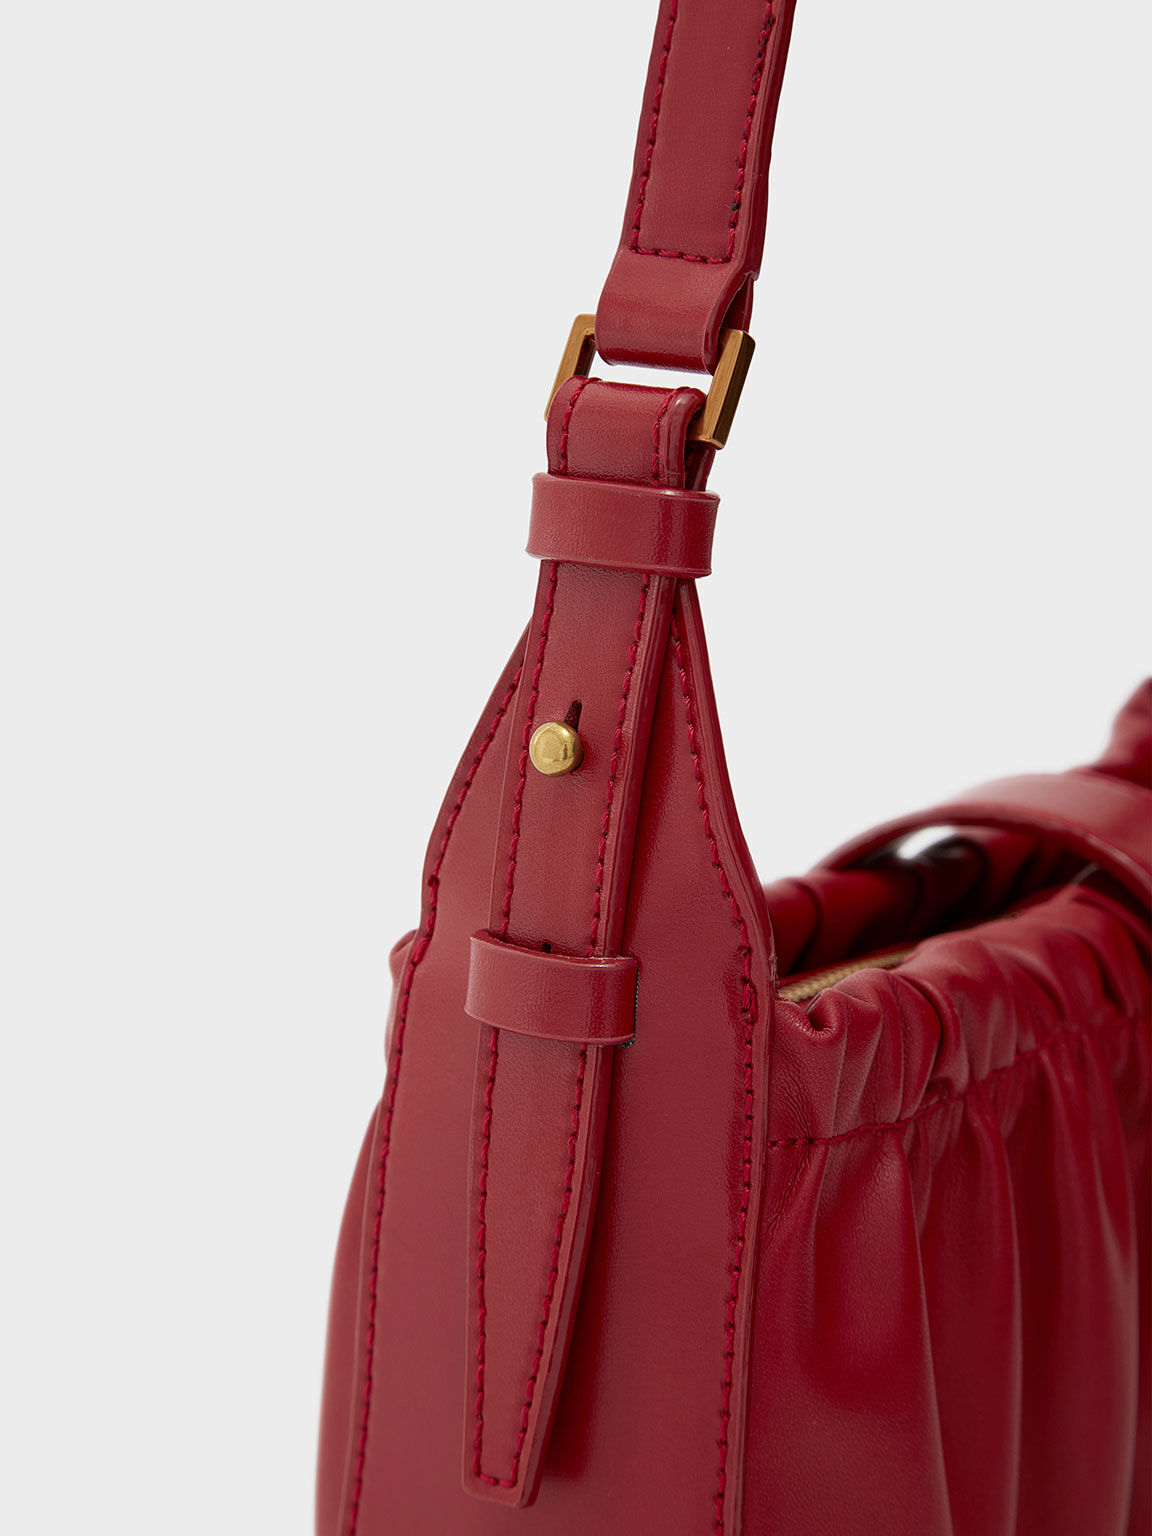 Enya Ruched Turn-Lock Shoulder Bag, Red, hi-res